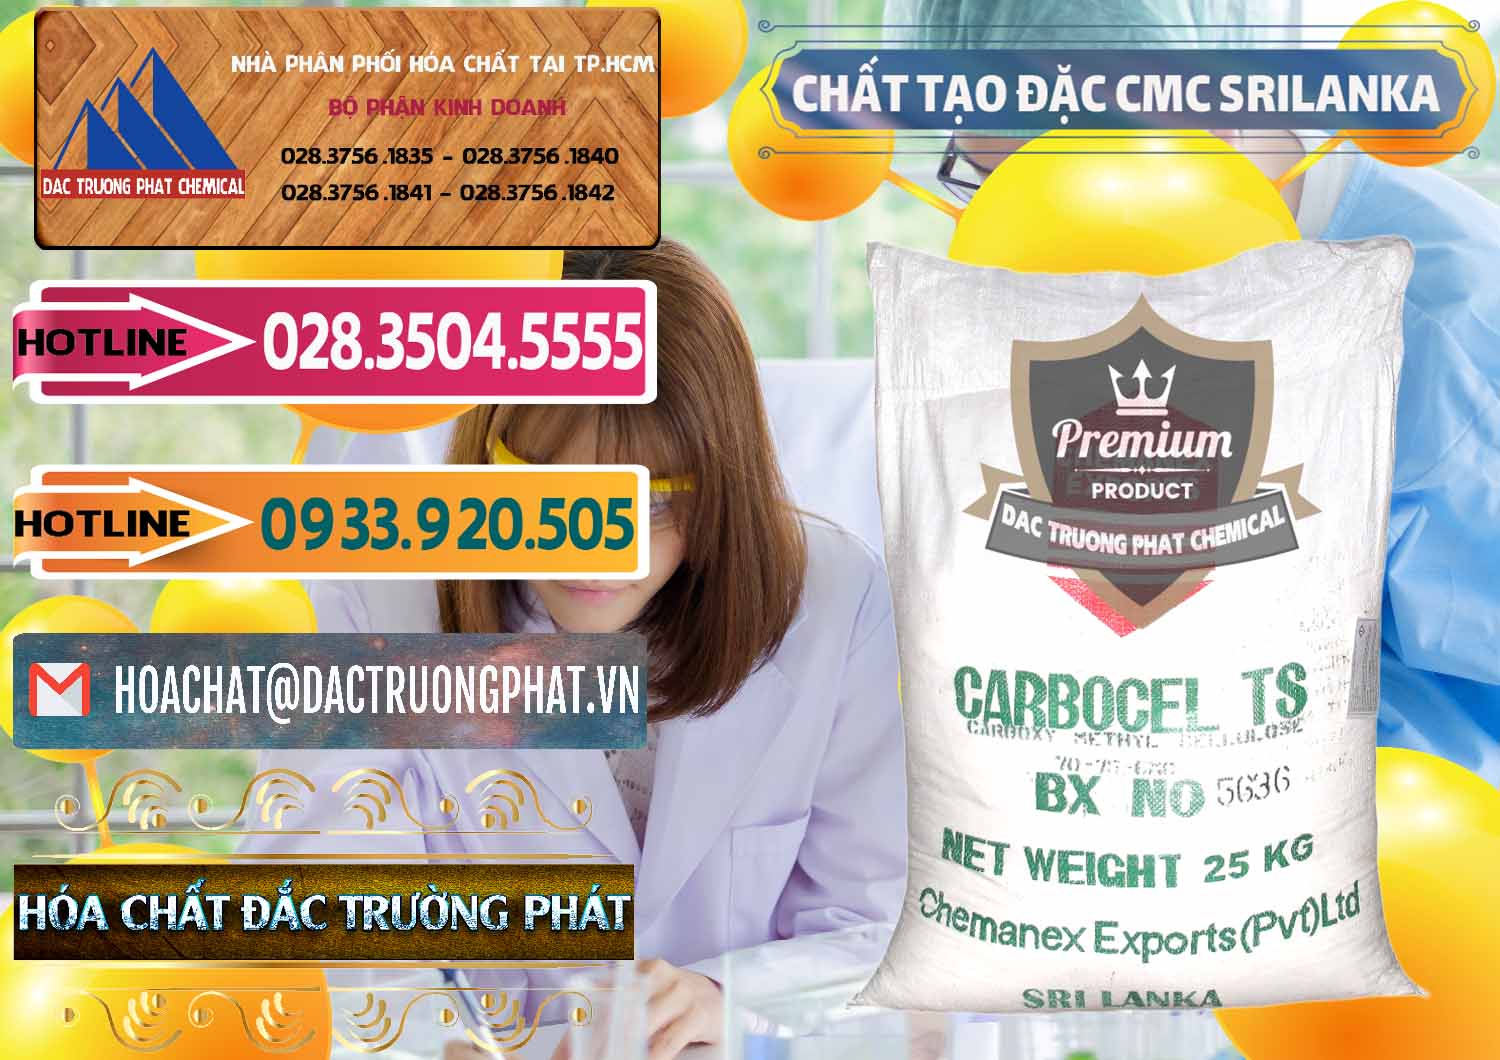 Cung cấp và bán Chất Tạo Đặc CMC - Carboxyl Methyl Cellulose Srilanka - 0045 - Kinh doanh và phân phối hóa chất tại TP.HCM - dactruongphat.vn